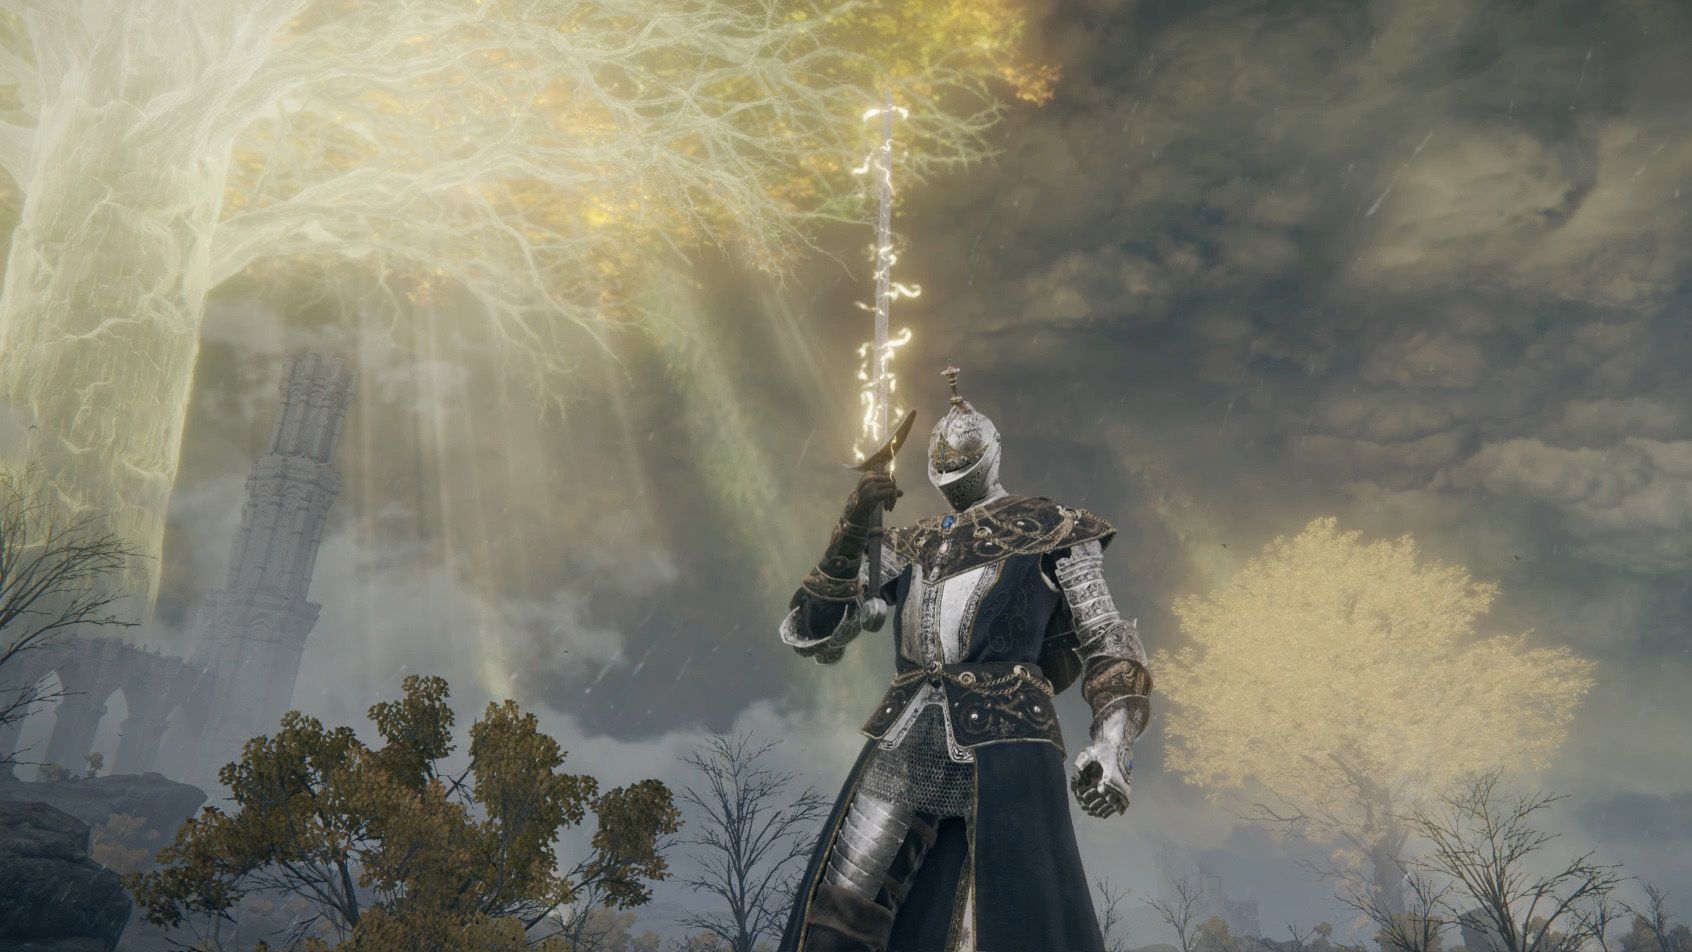 А тут герой зарядил молниями свой меч &mdash; тоже хорошая схема. Скриншот: PC Gamer